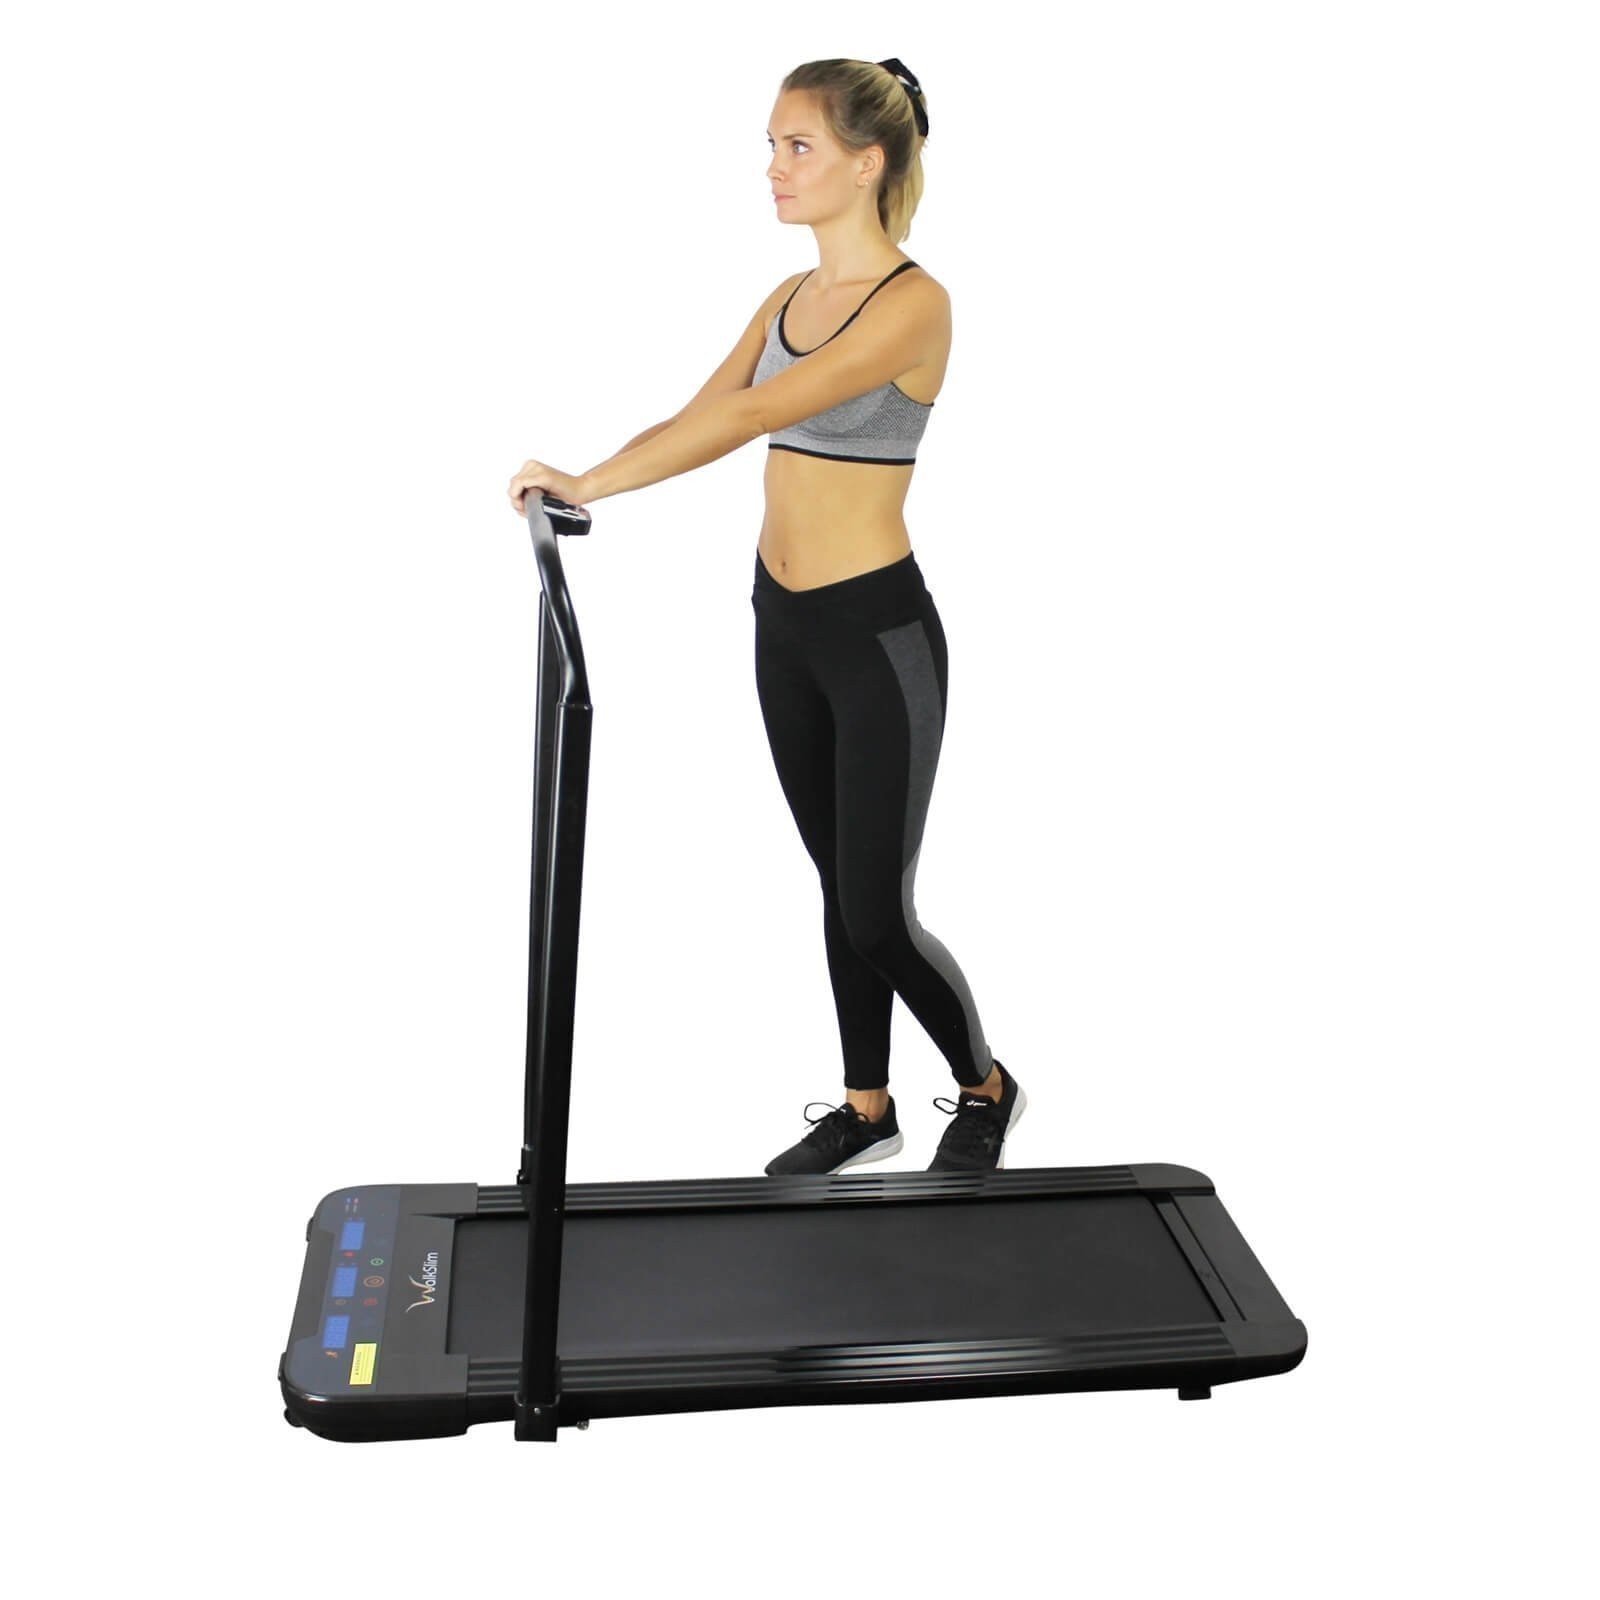 WalkSlim Walking Treadmill - Best home fitness machine